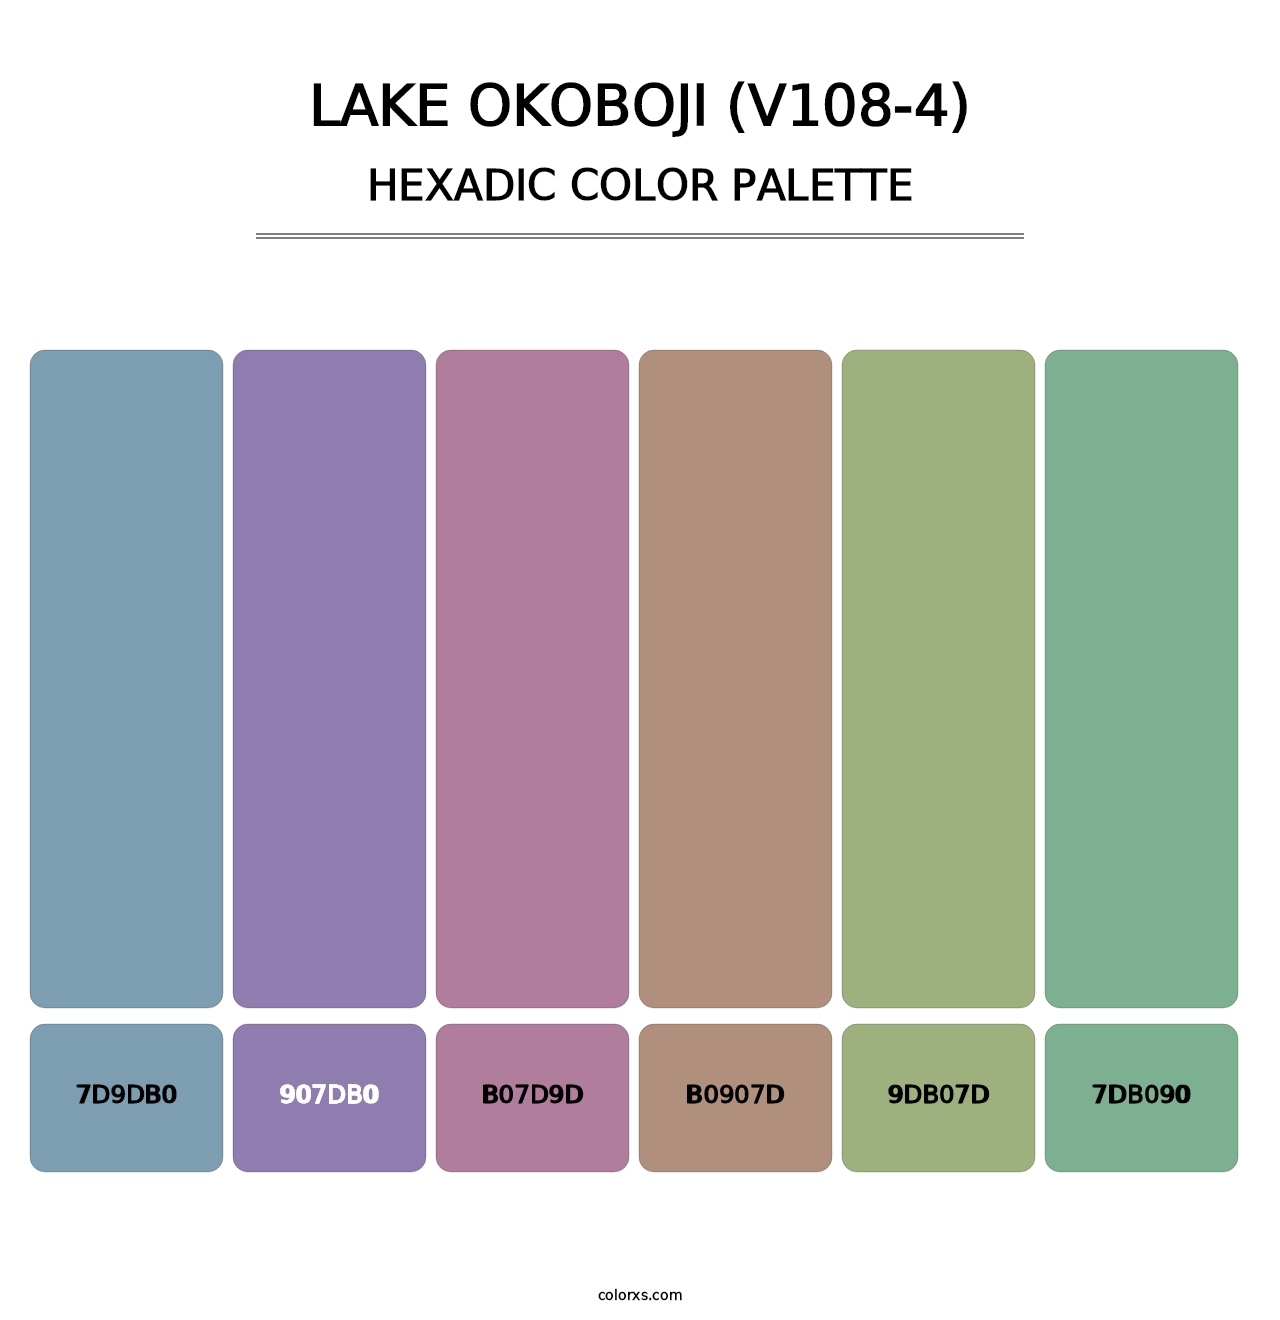 Lake Okoboji (V108-4) - Hexadic Color Palette